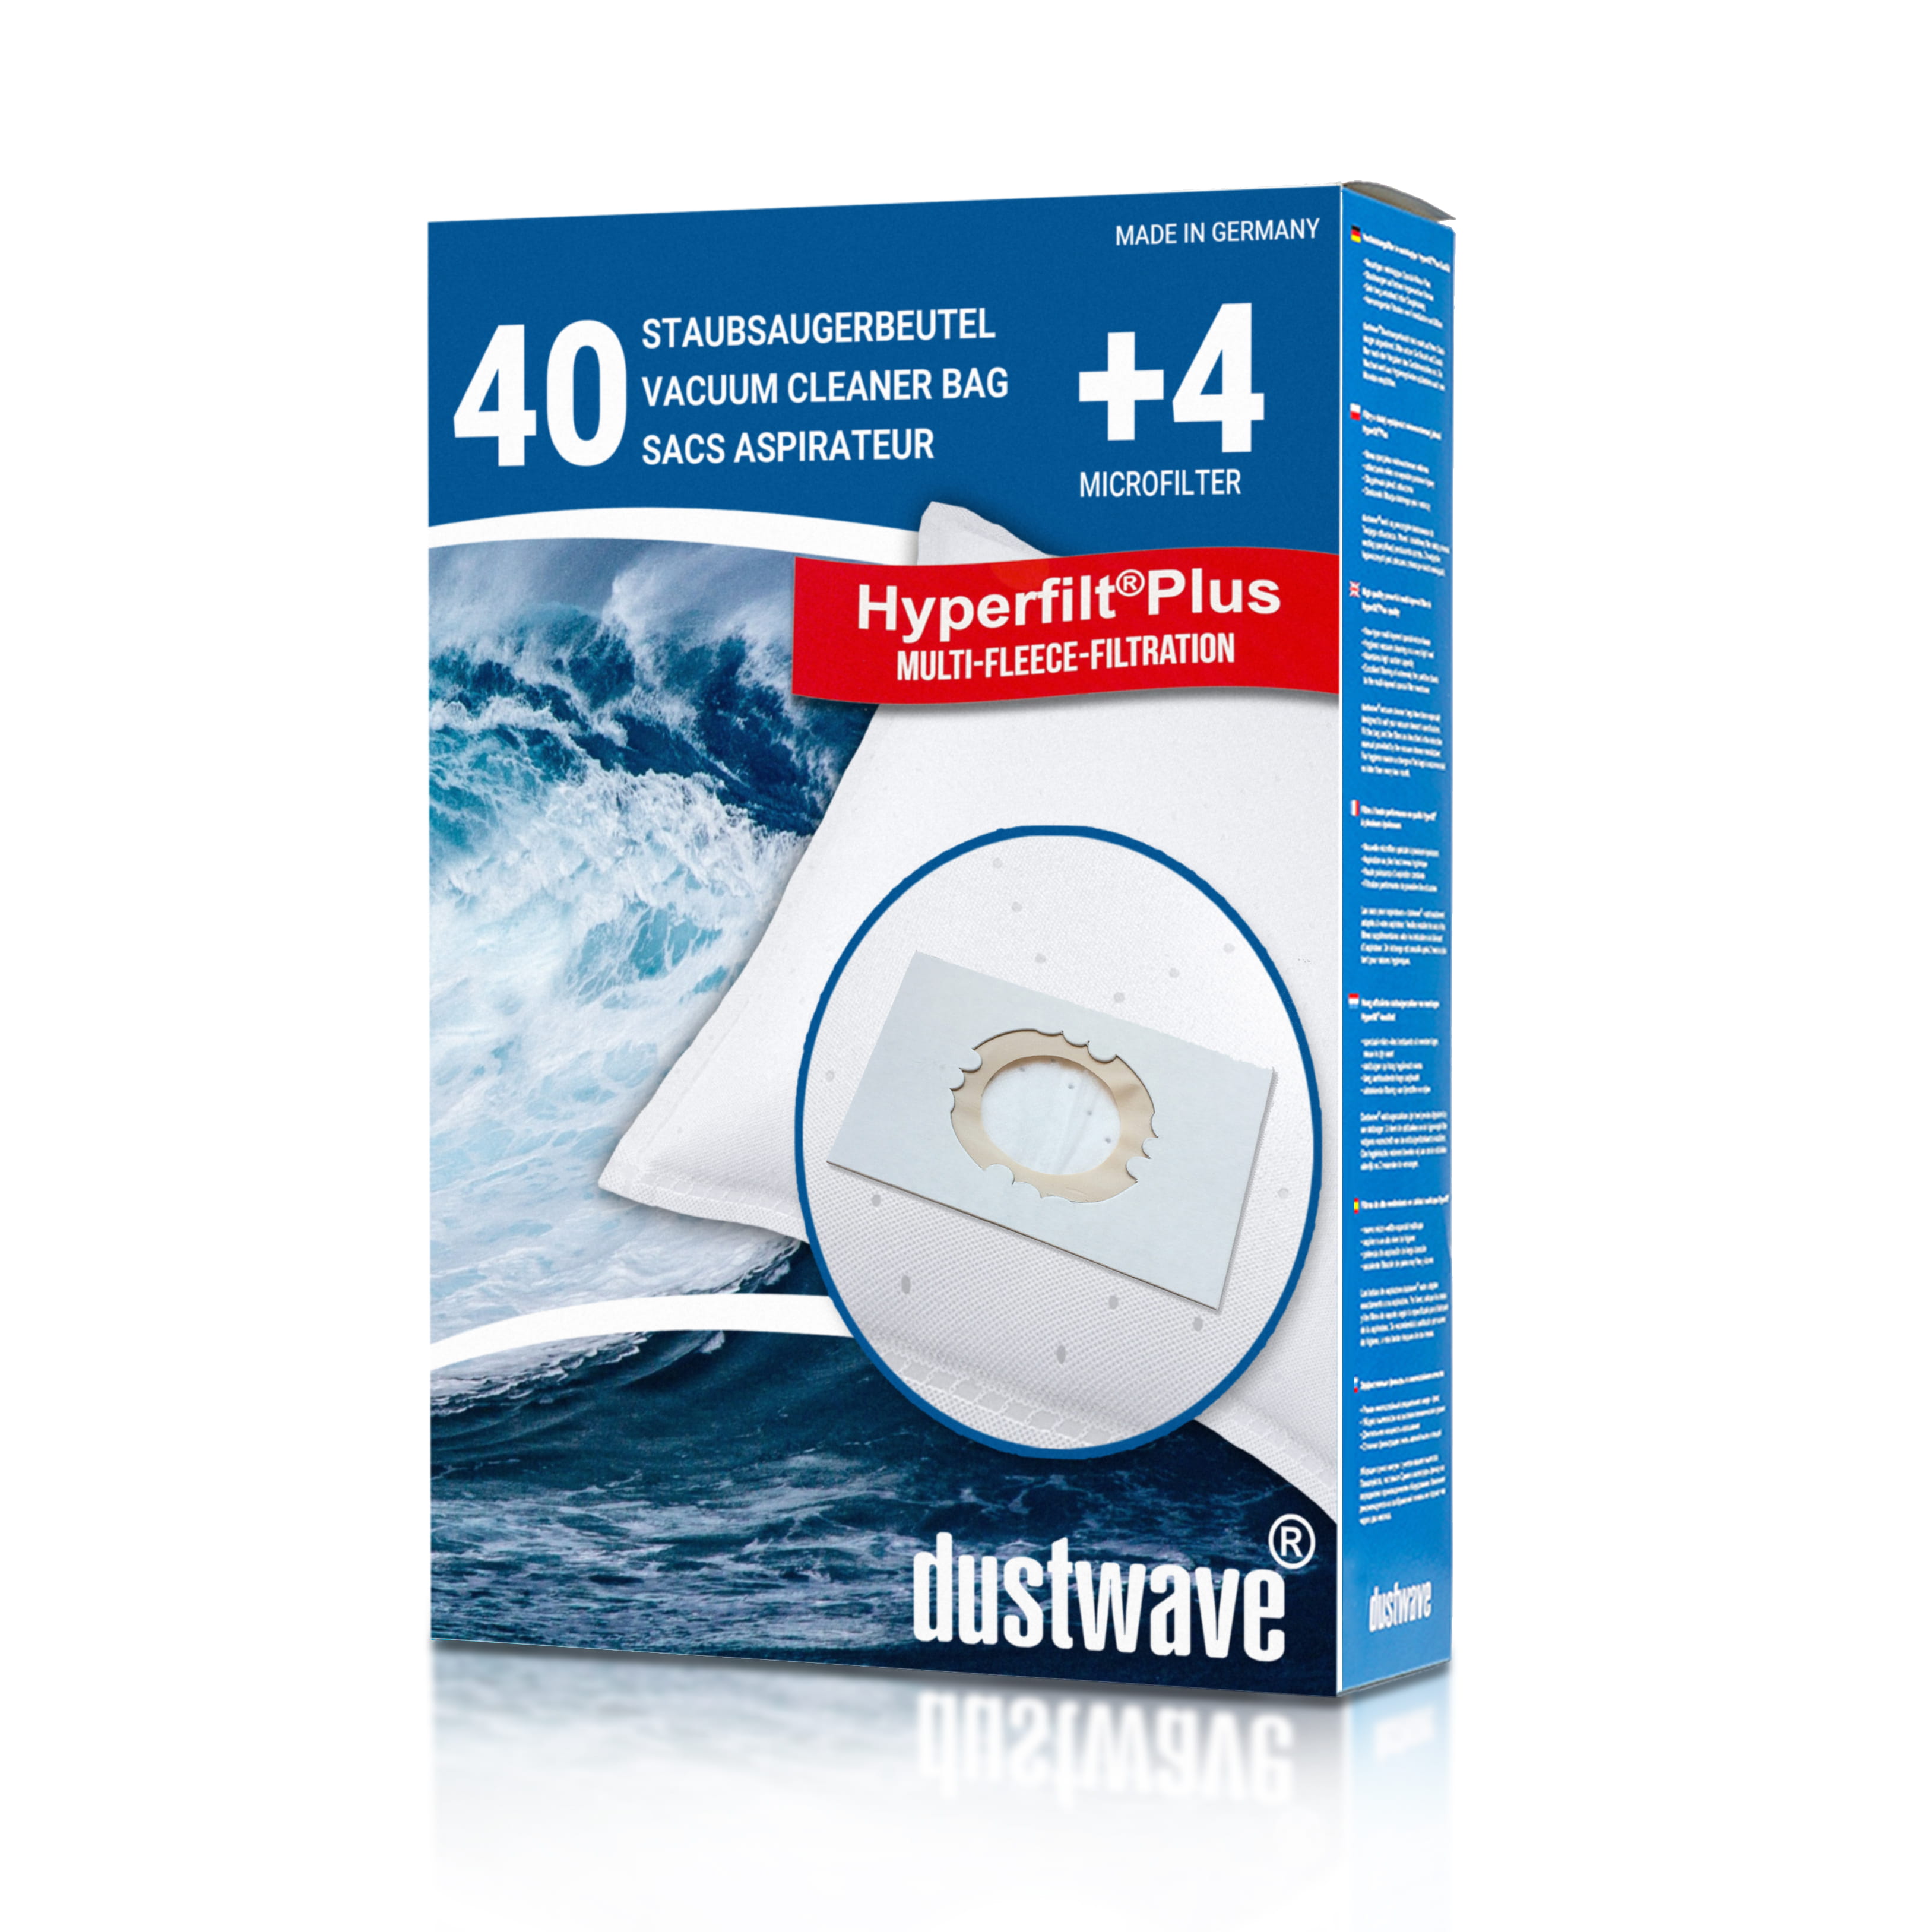 Dustwave® 40 Staubsaugerbeutel für Hoover H 39 / H39 - hocheffizient, mehrlagiges Mikrovlies mit Hygieneverschluss - Made in Germany